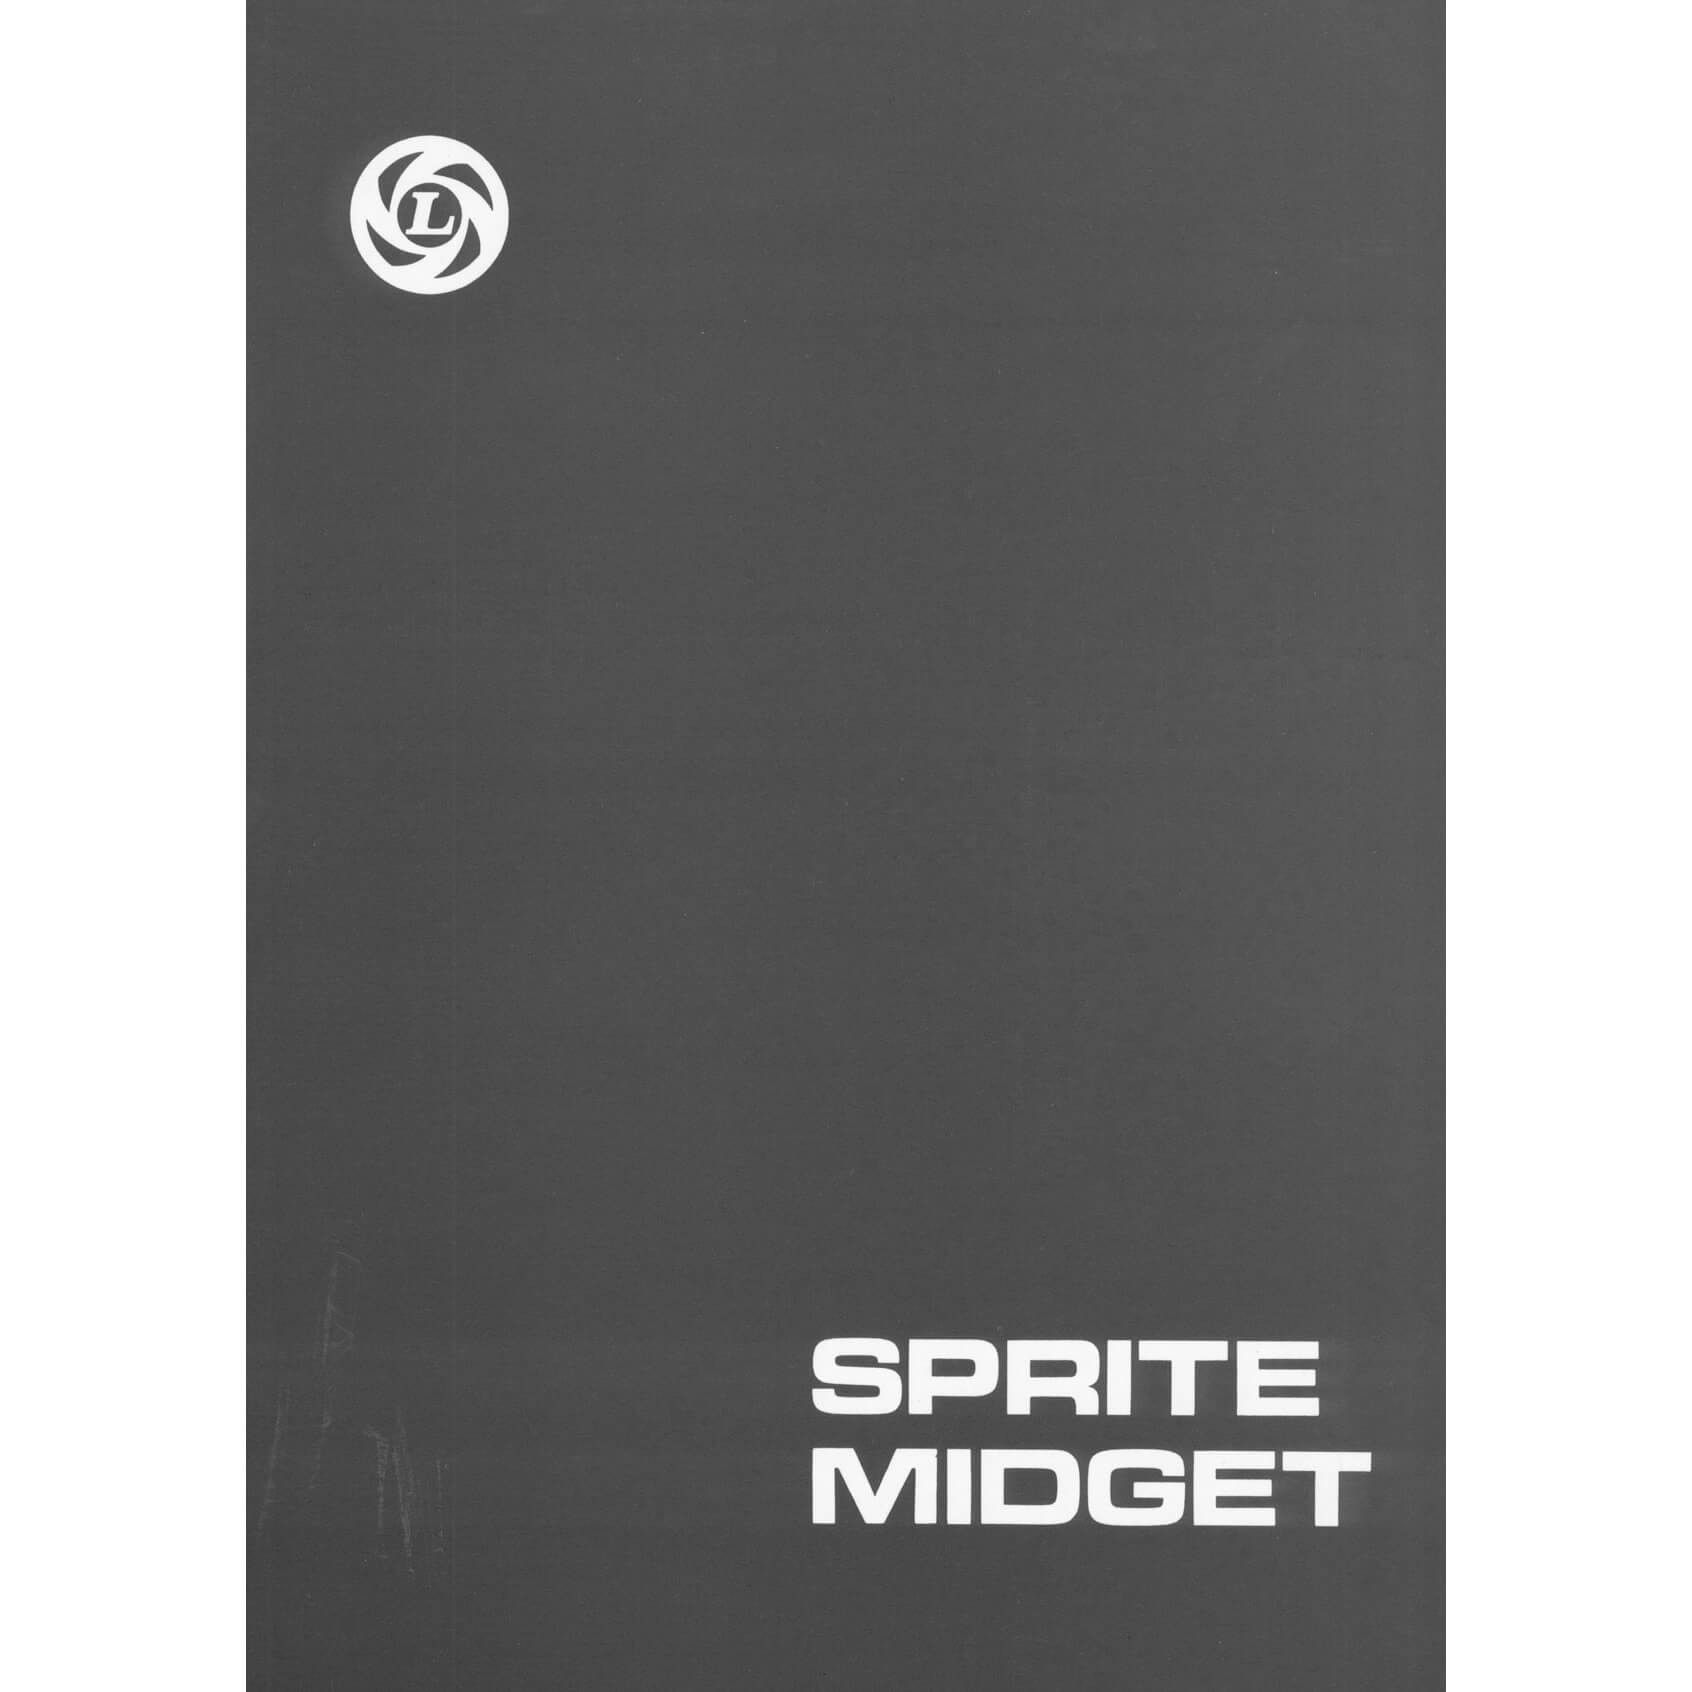 Sprite midget workshop manual